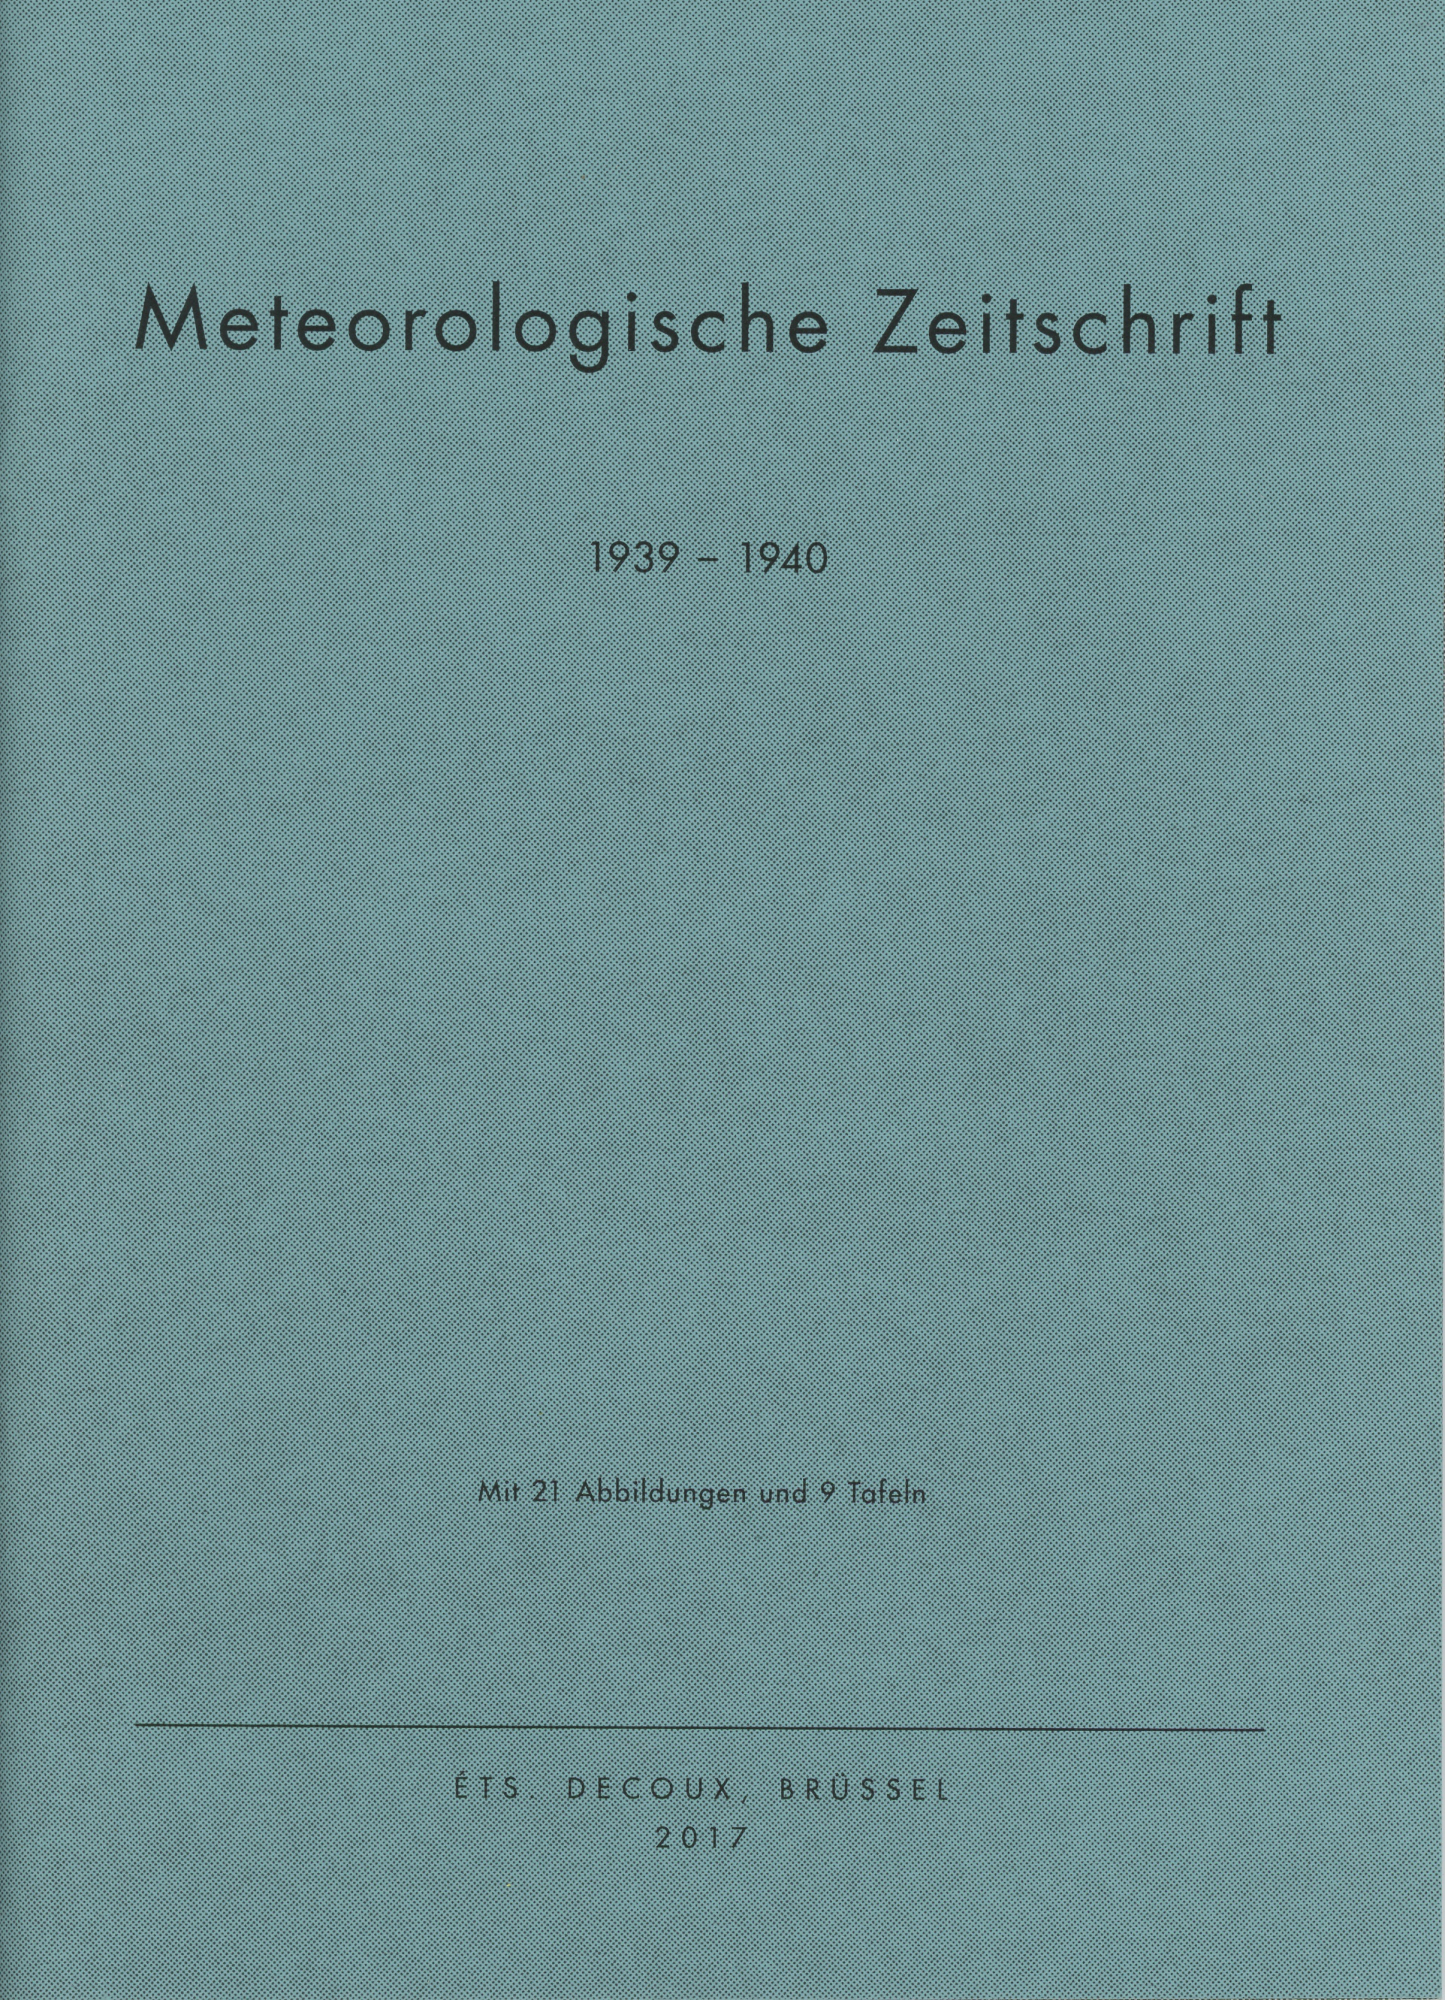 Meteorologische Zeitschrift, 1939 – 1940, Ets Decoux, Bruxelles, 2017